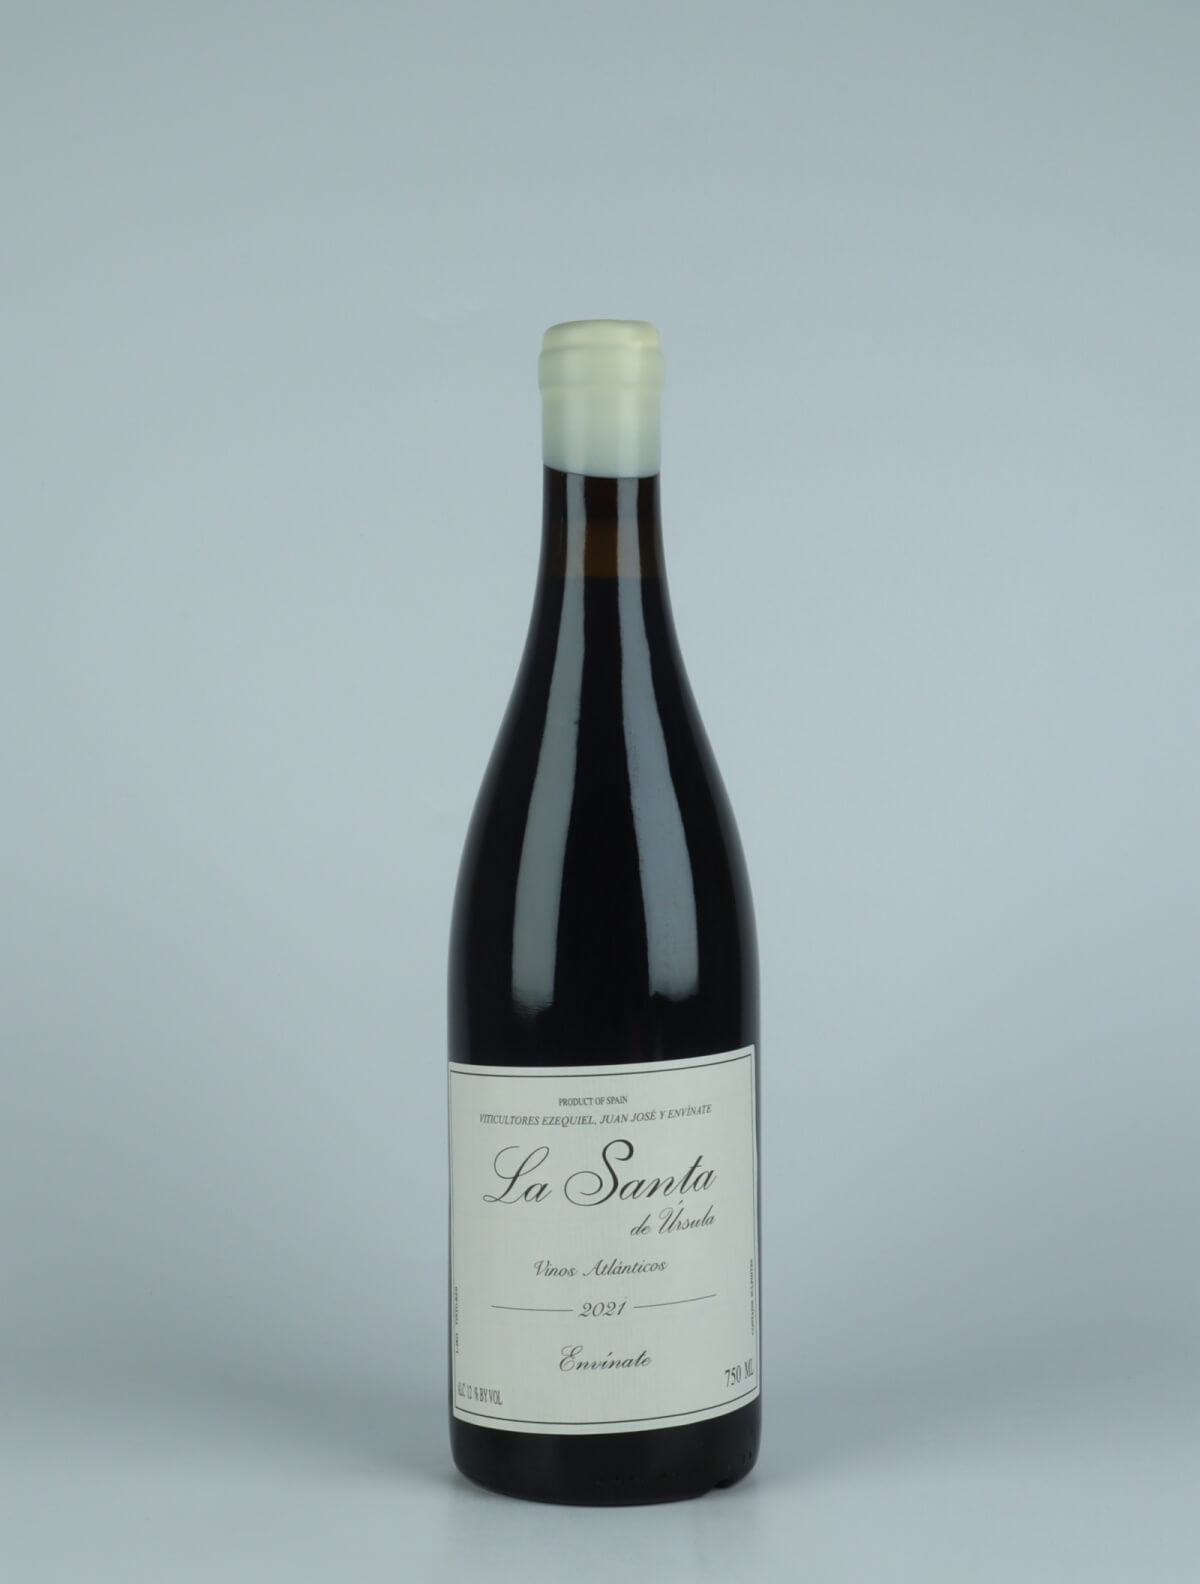 A bottle 2021 La Santa - Tenerife Red wine from Envínate,  in Spain